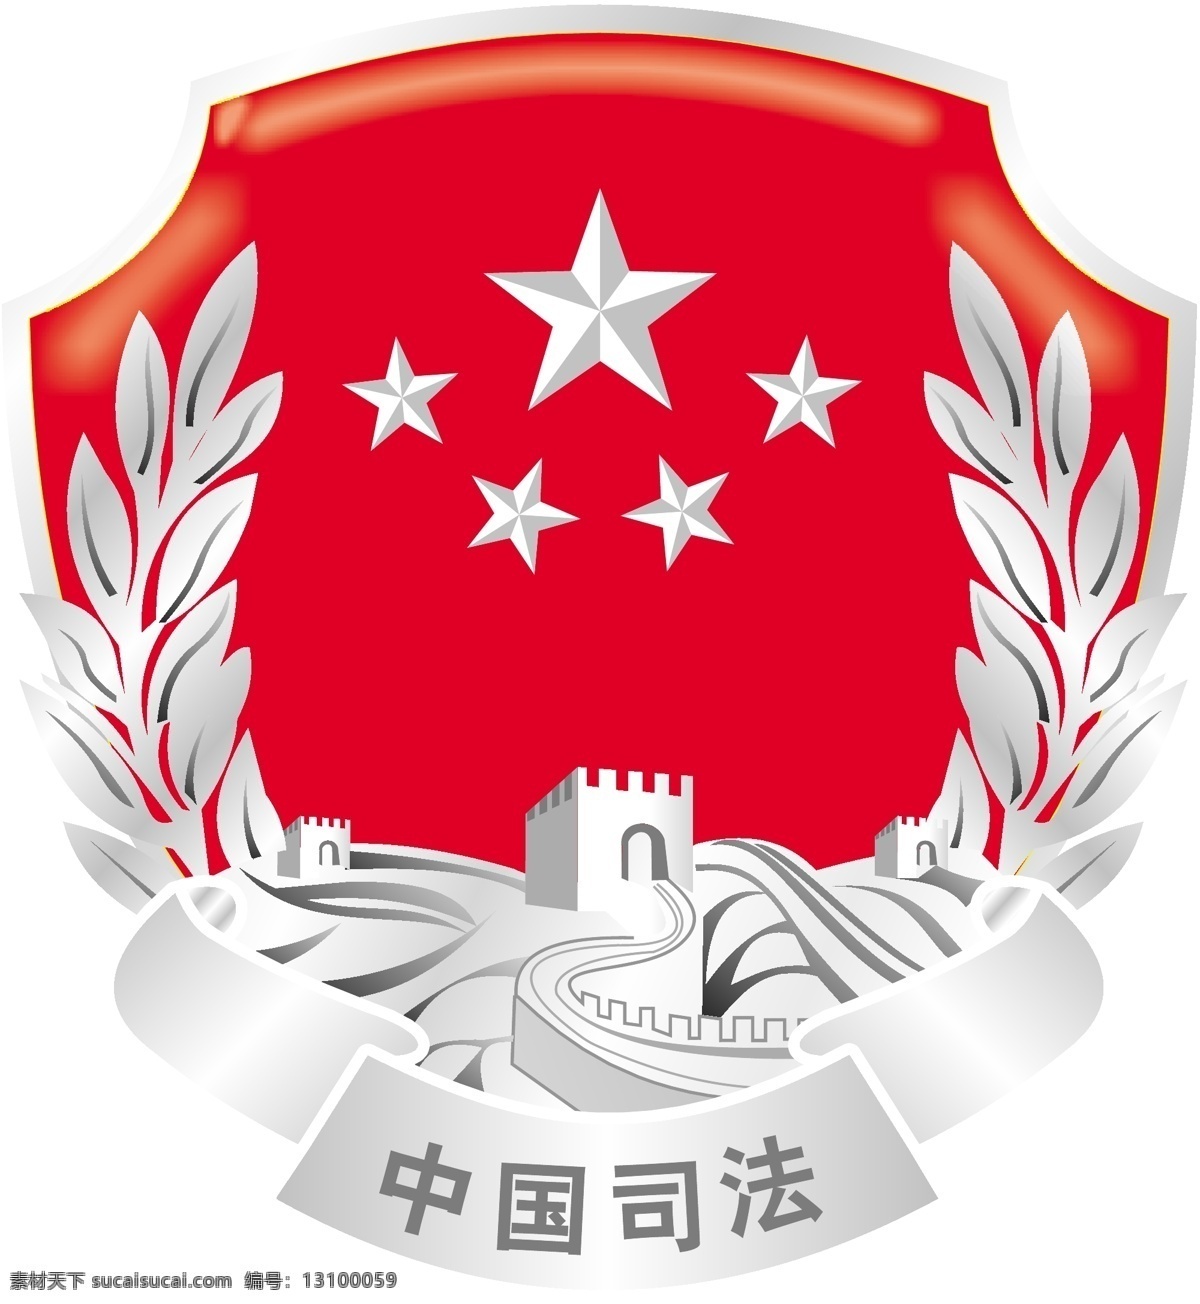 司法 标志 司法标志 中国司法 矢量图 日常生活